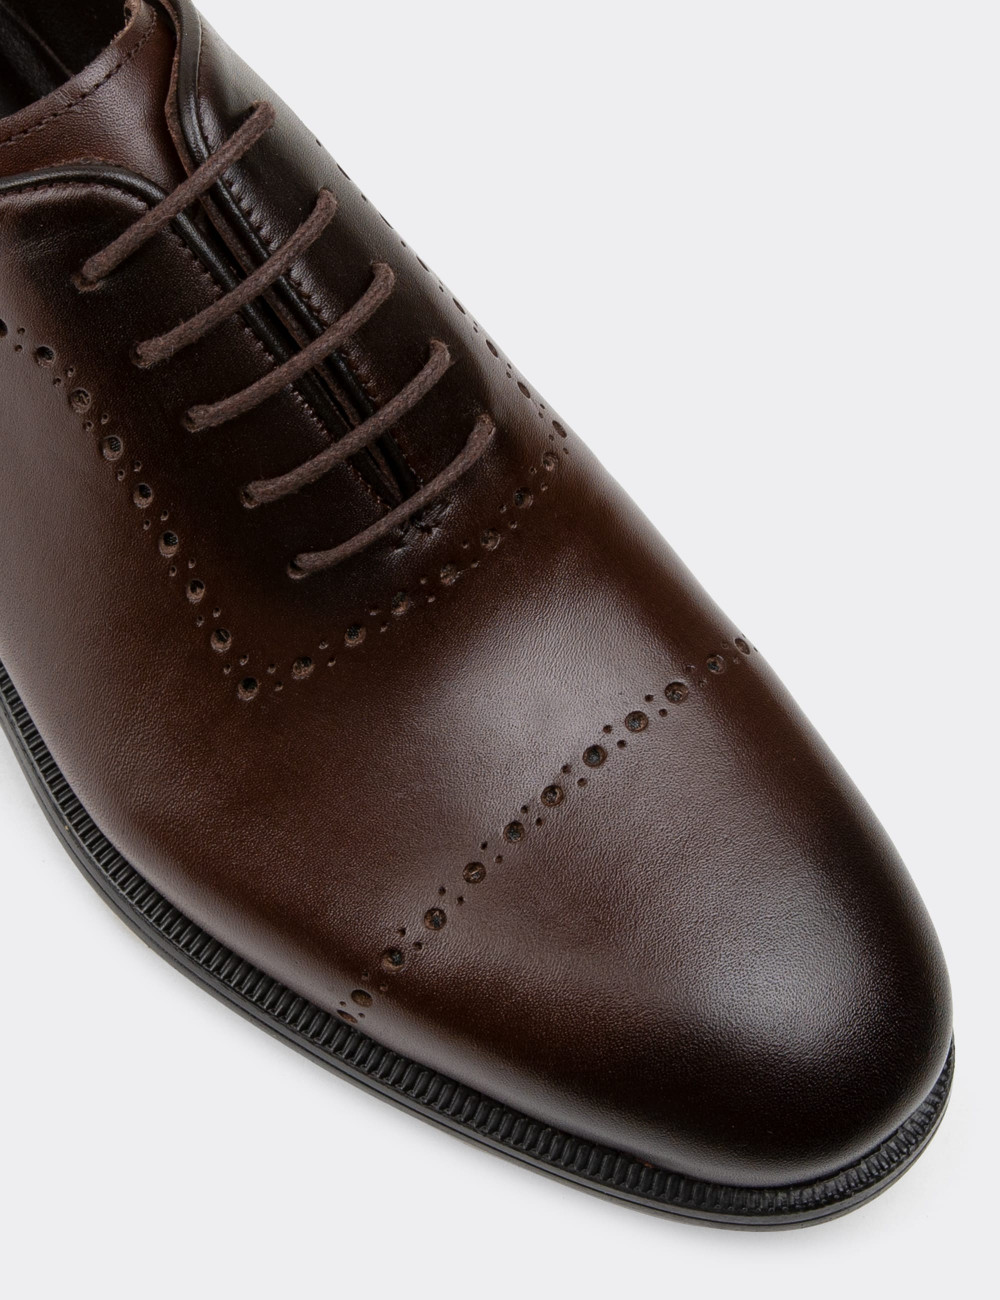 Hakiki Deri Kahverengi Klasik Erkek Ayakkabı - 00491MKHVC02